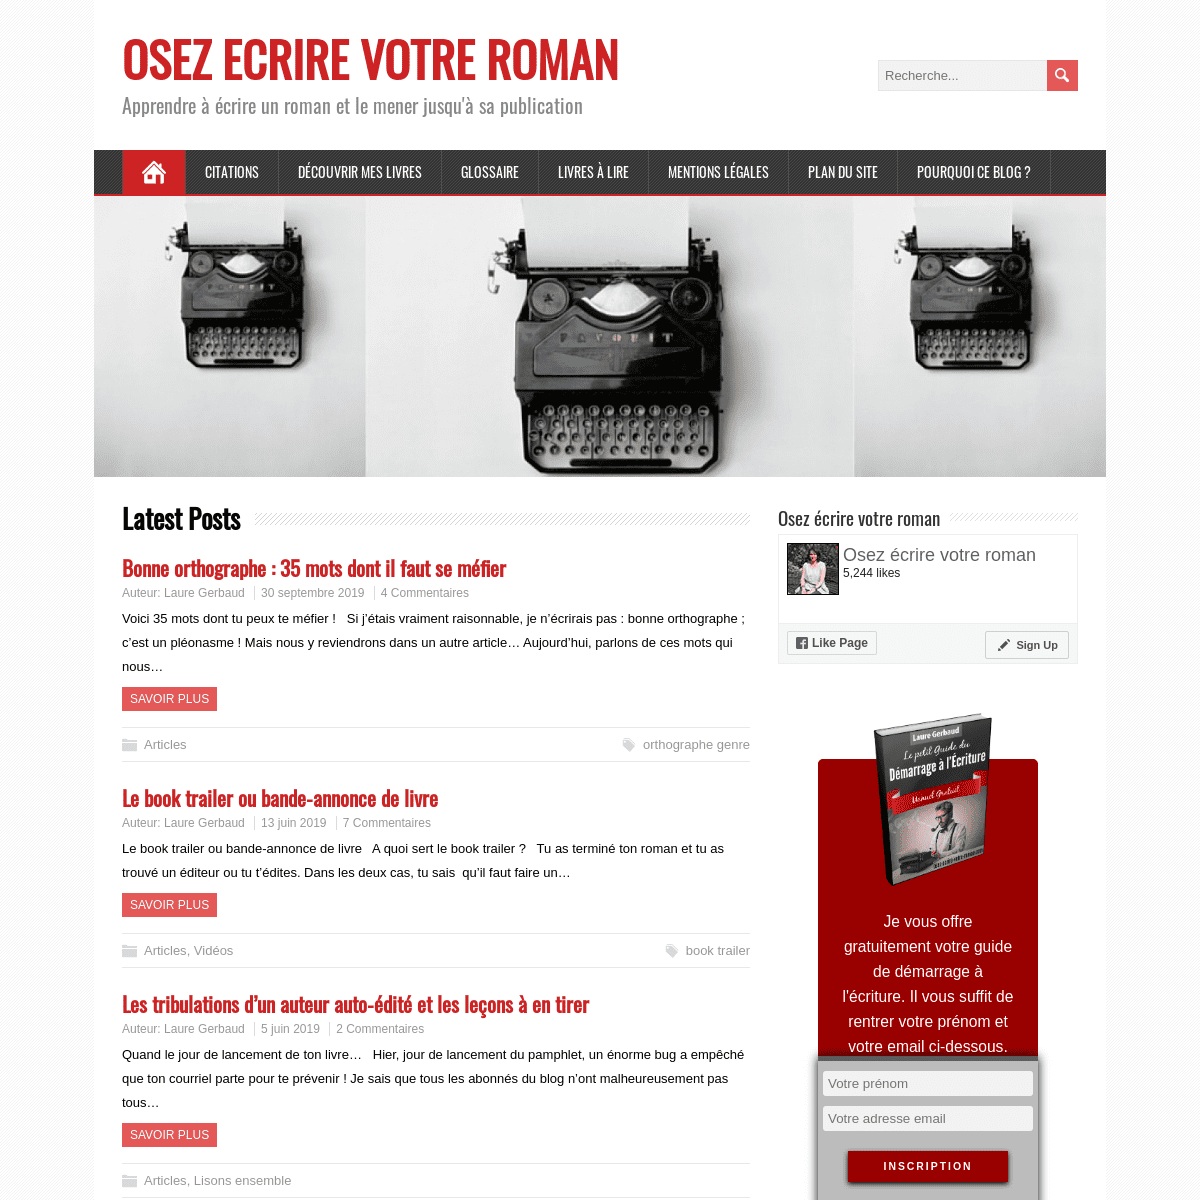 A complete backup of osez-ecrire-votre-roman.com